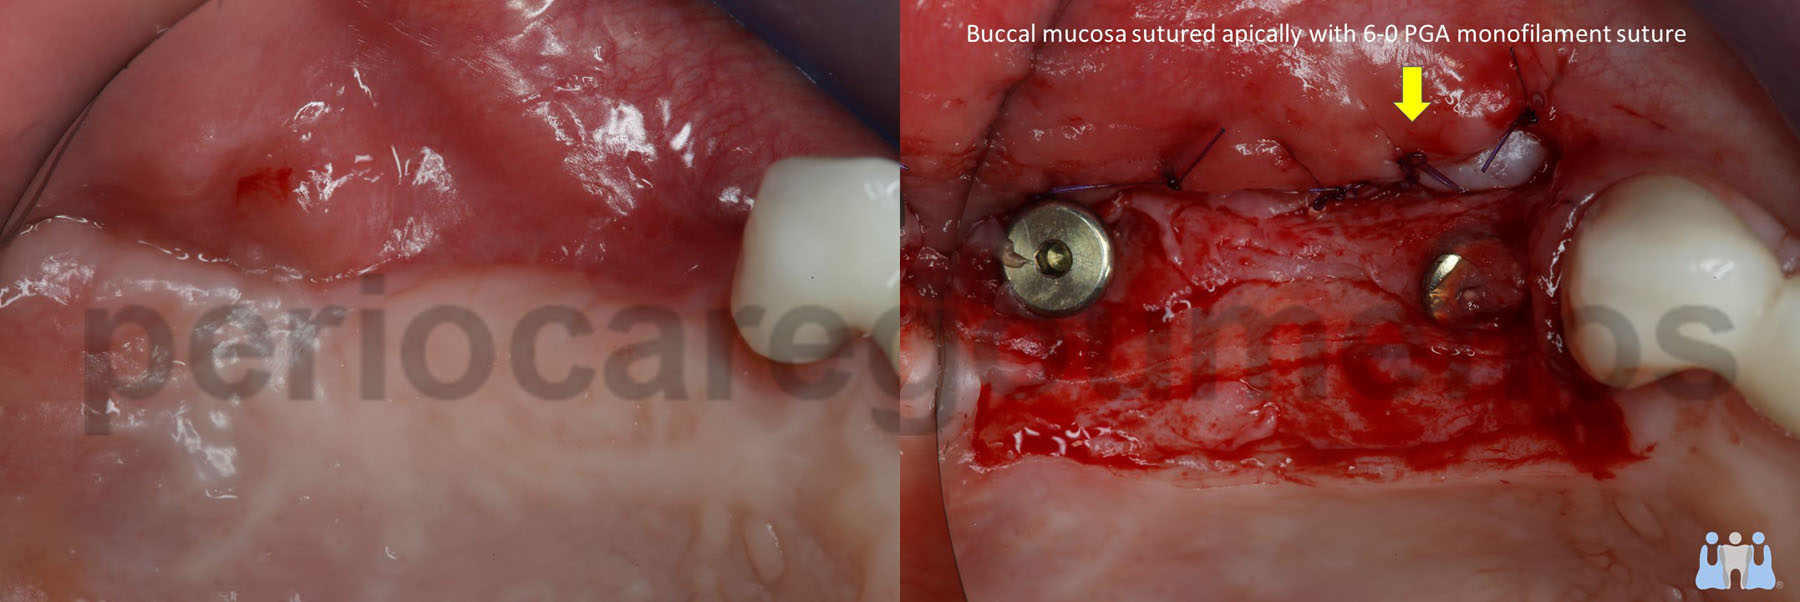 Implant uncoverage in the posterior mxilla